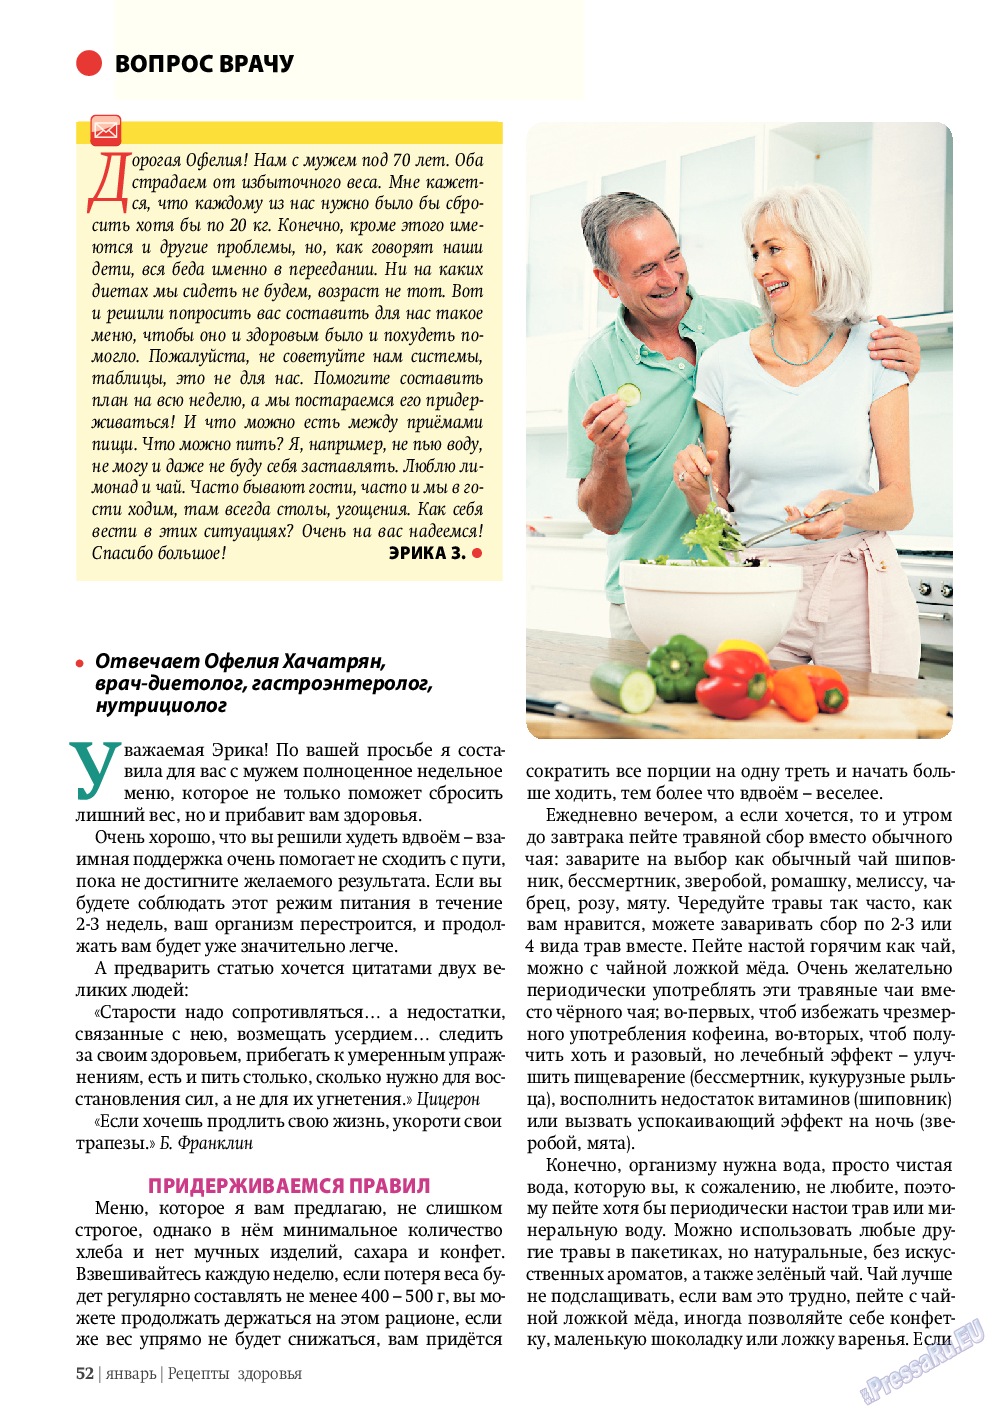 Рецепты здоровья, журнал. 2012 №1 стр.52